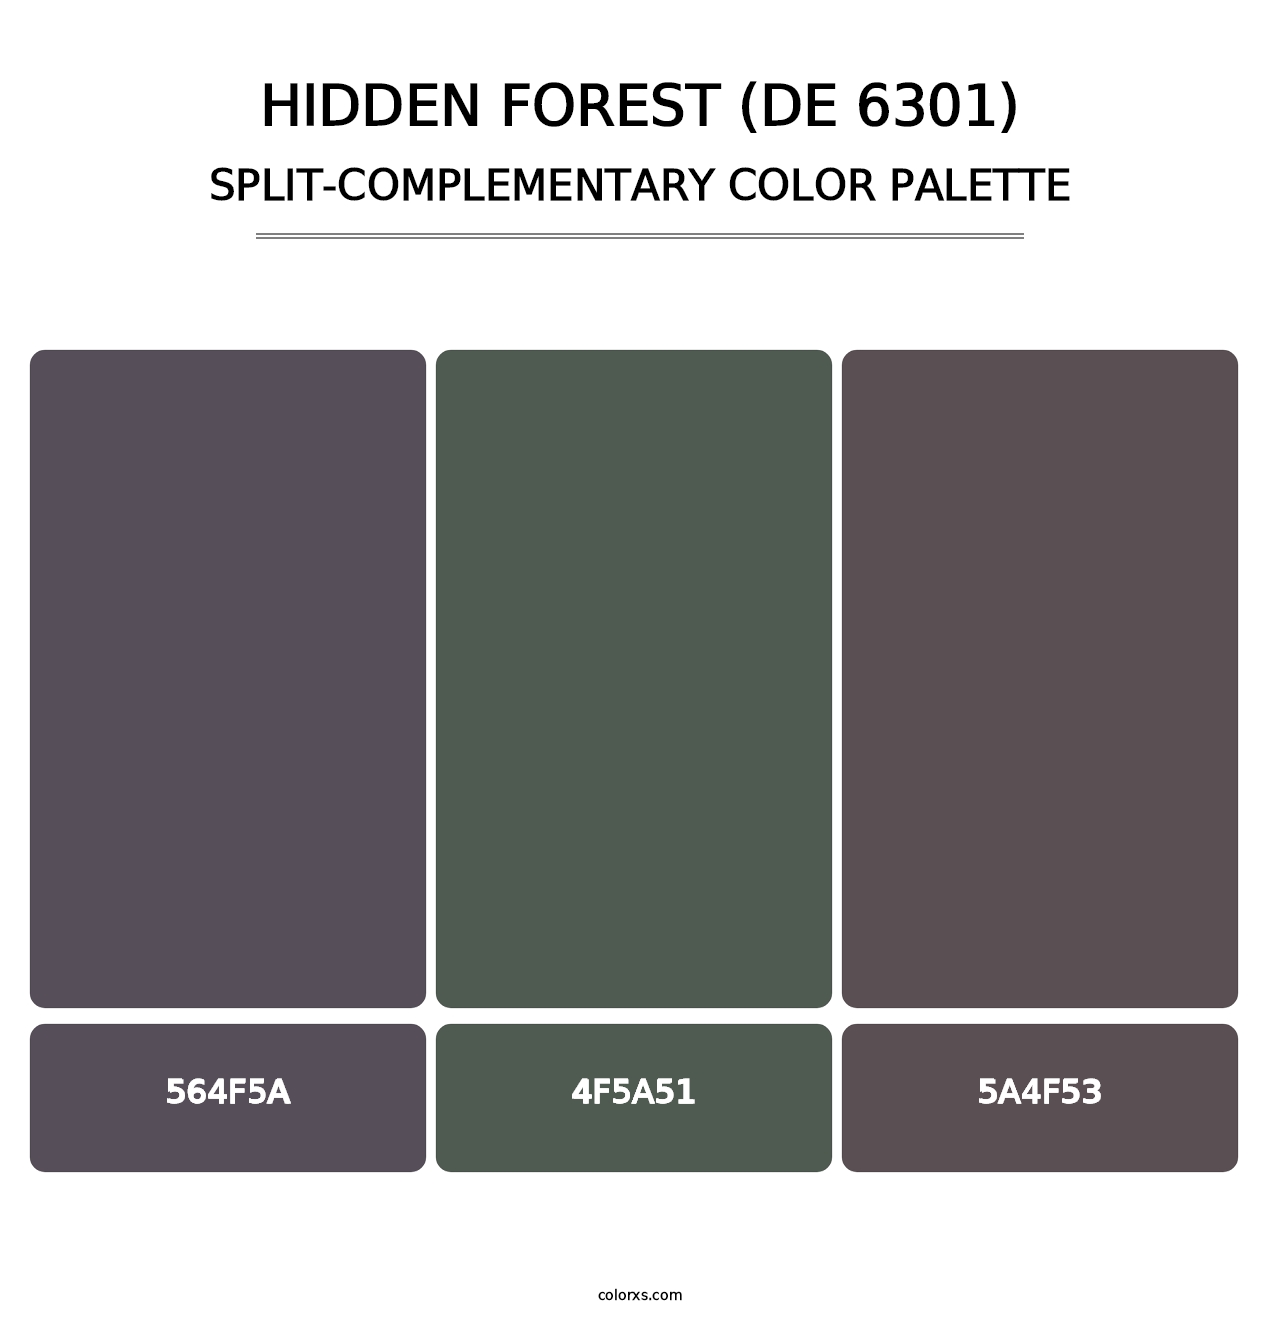 Hidden Forest (DE 6301) - Split-Complementary Color Palette